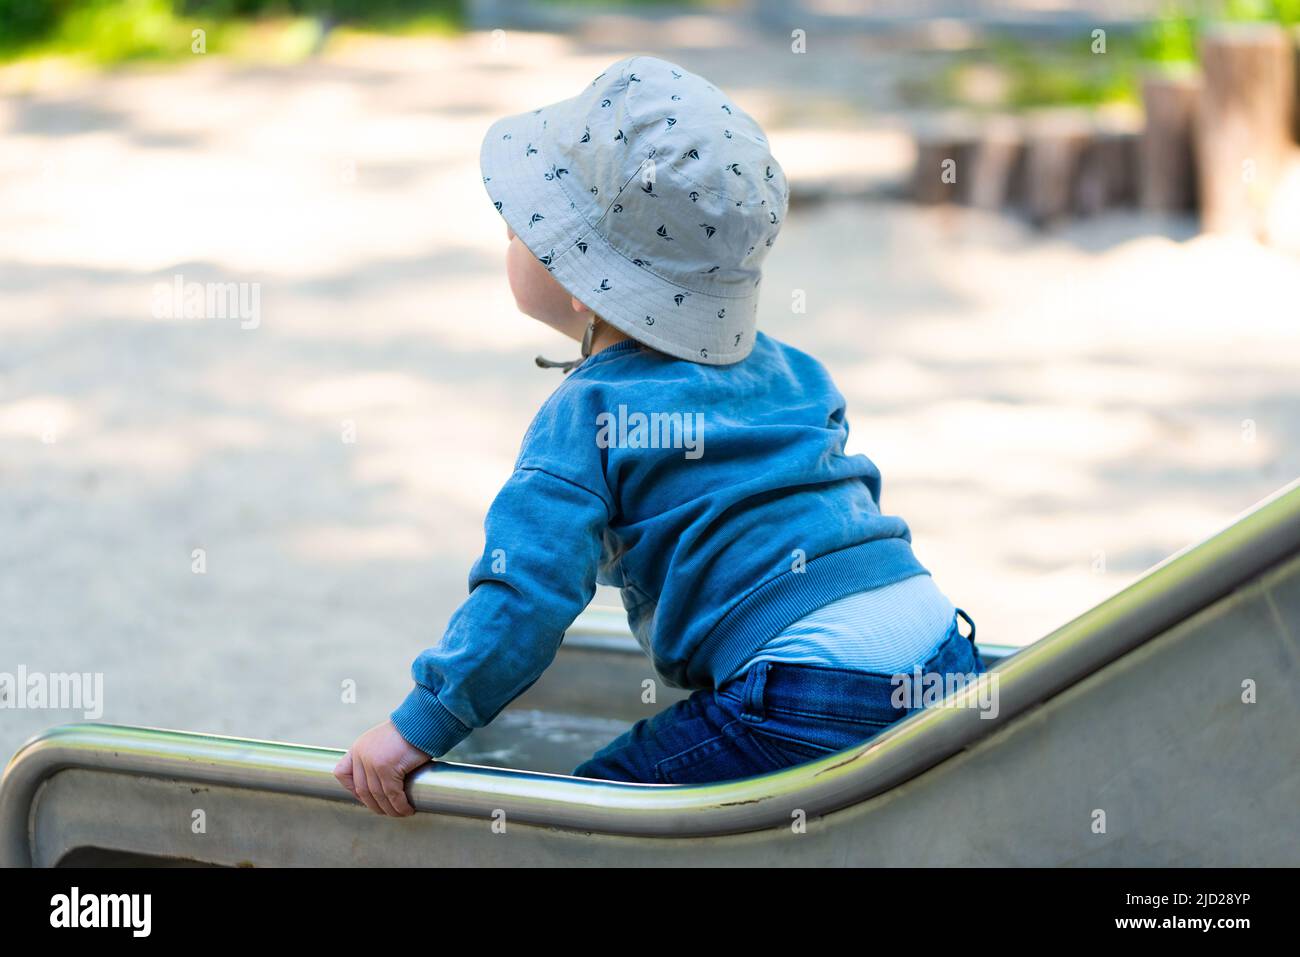 vista trasera del niño en el tobogán, un niño de un año usando el tobogán en el patio de juegos Foto de stock